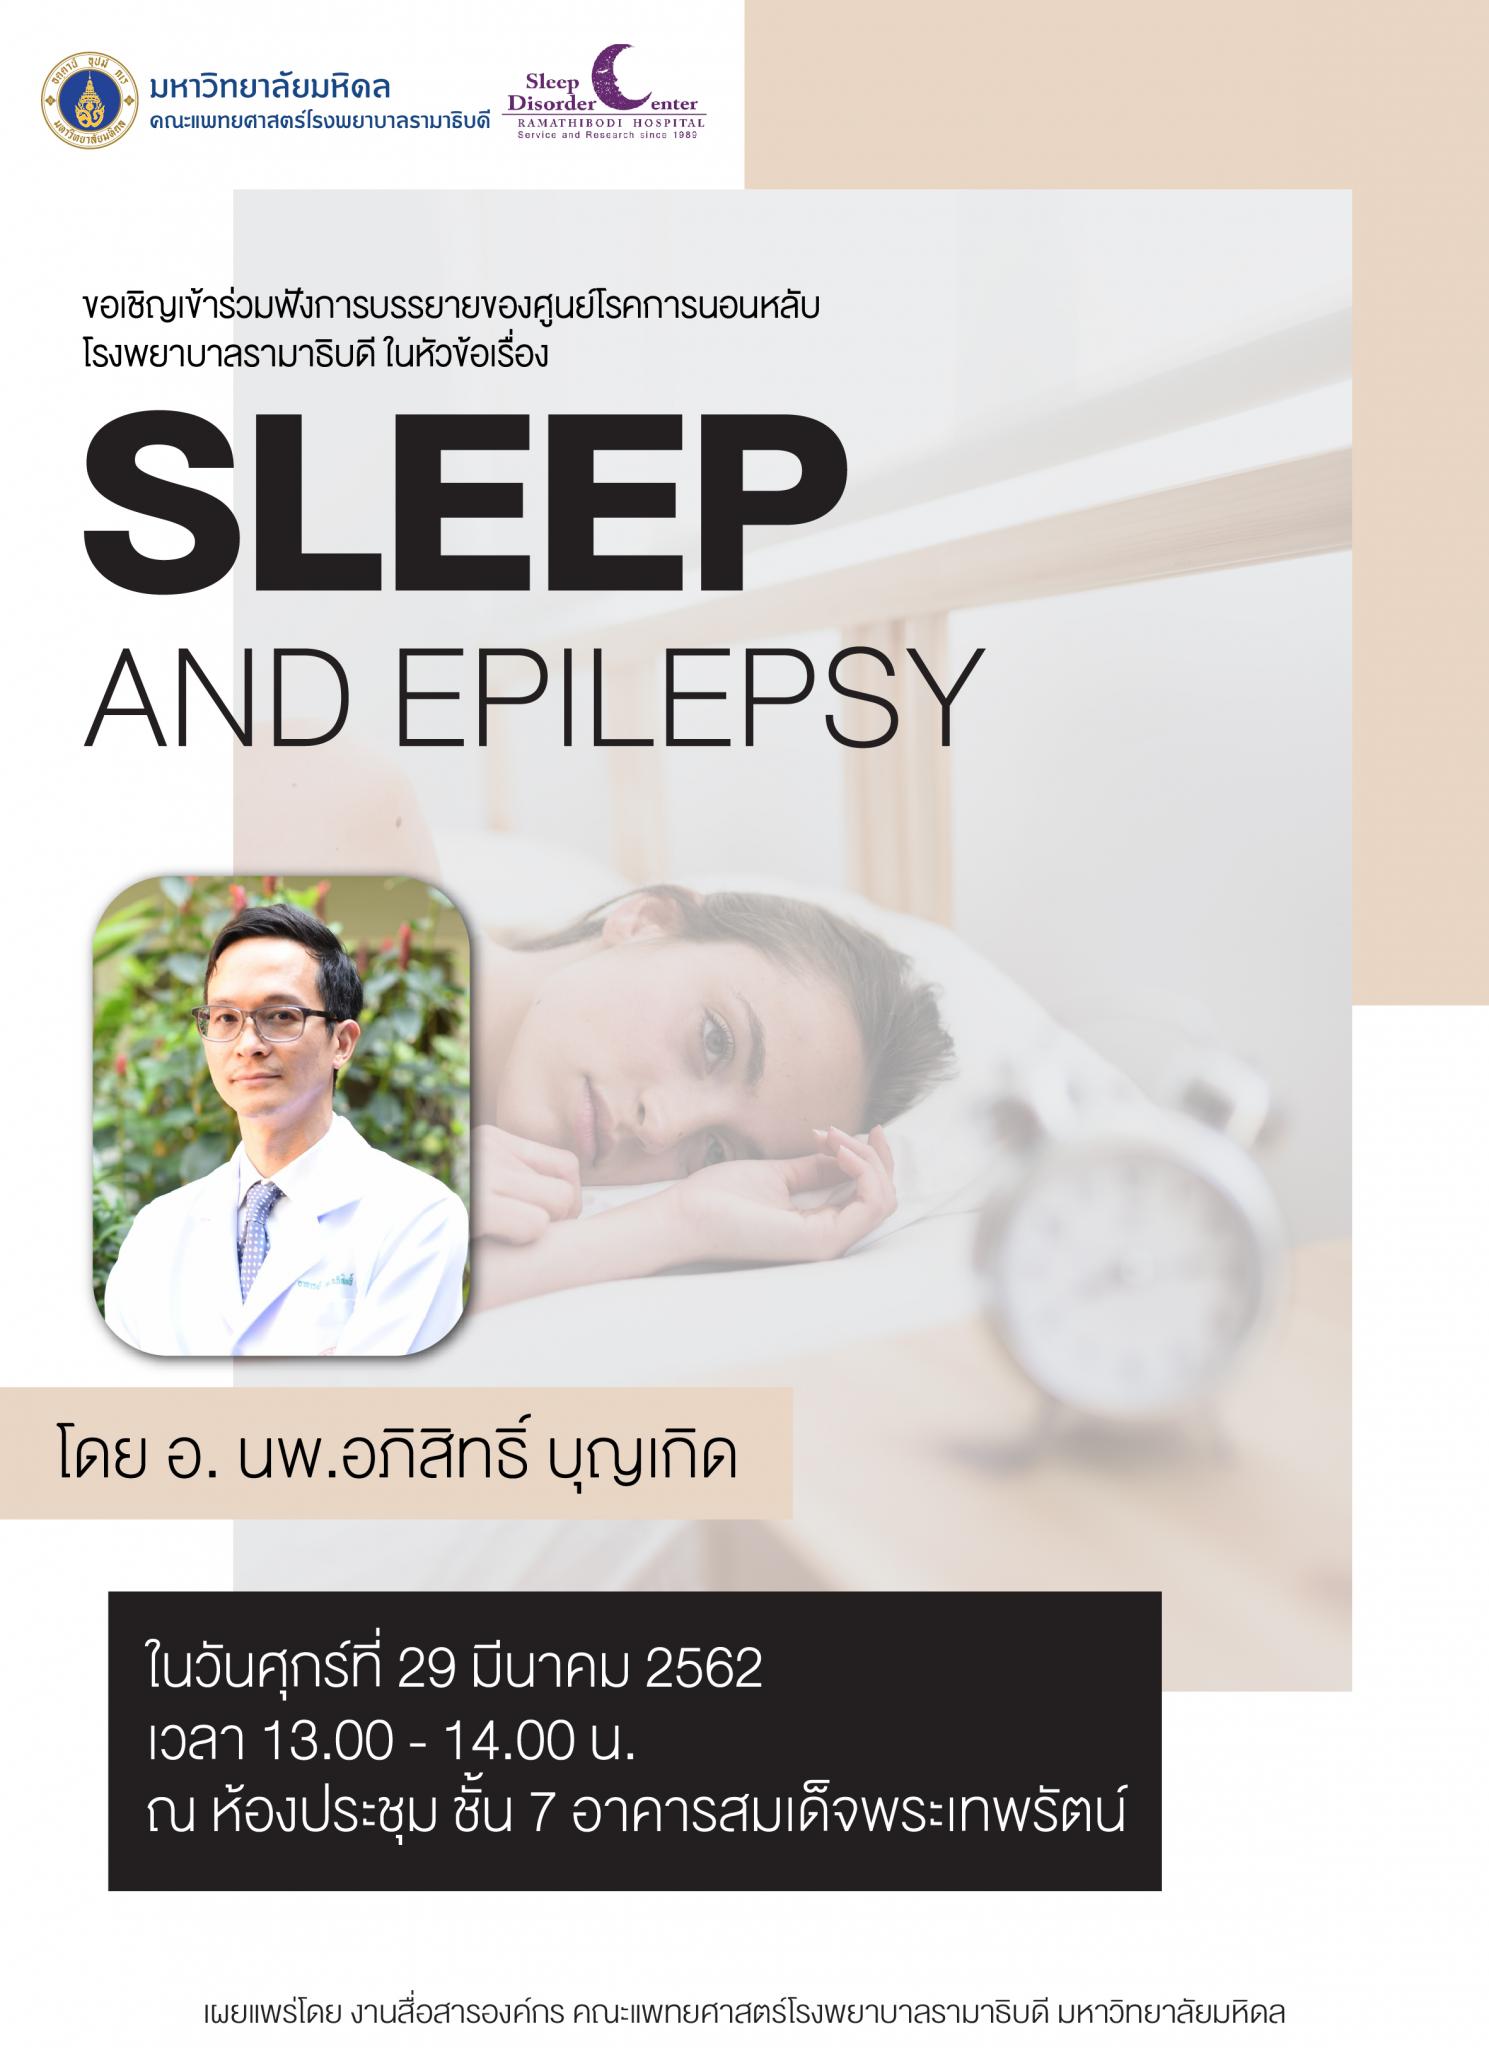 ขอเชิญเข้าร่วมฟังการบรรยาย เรื่อง Sleep and epilepsy